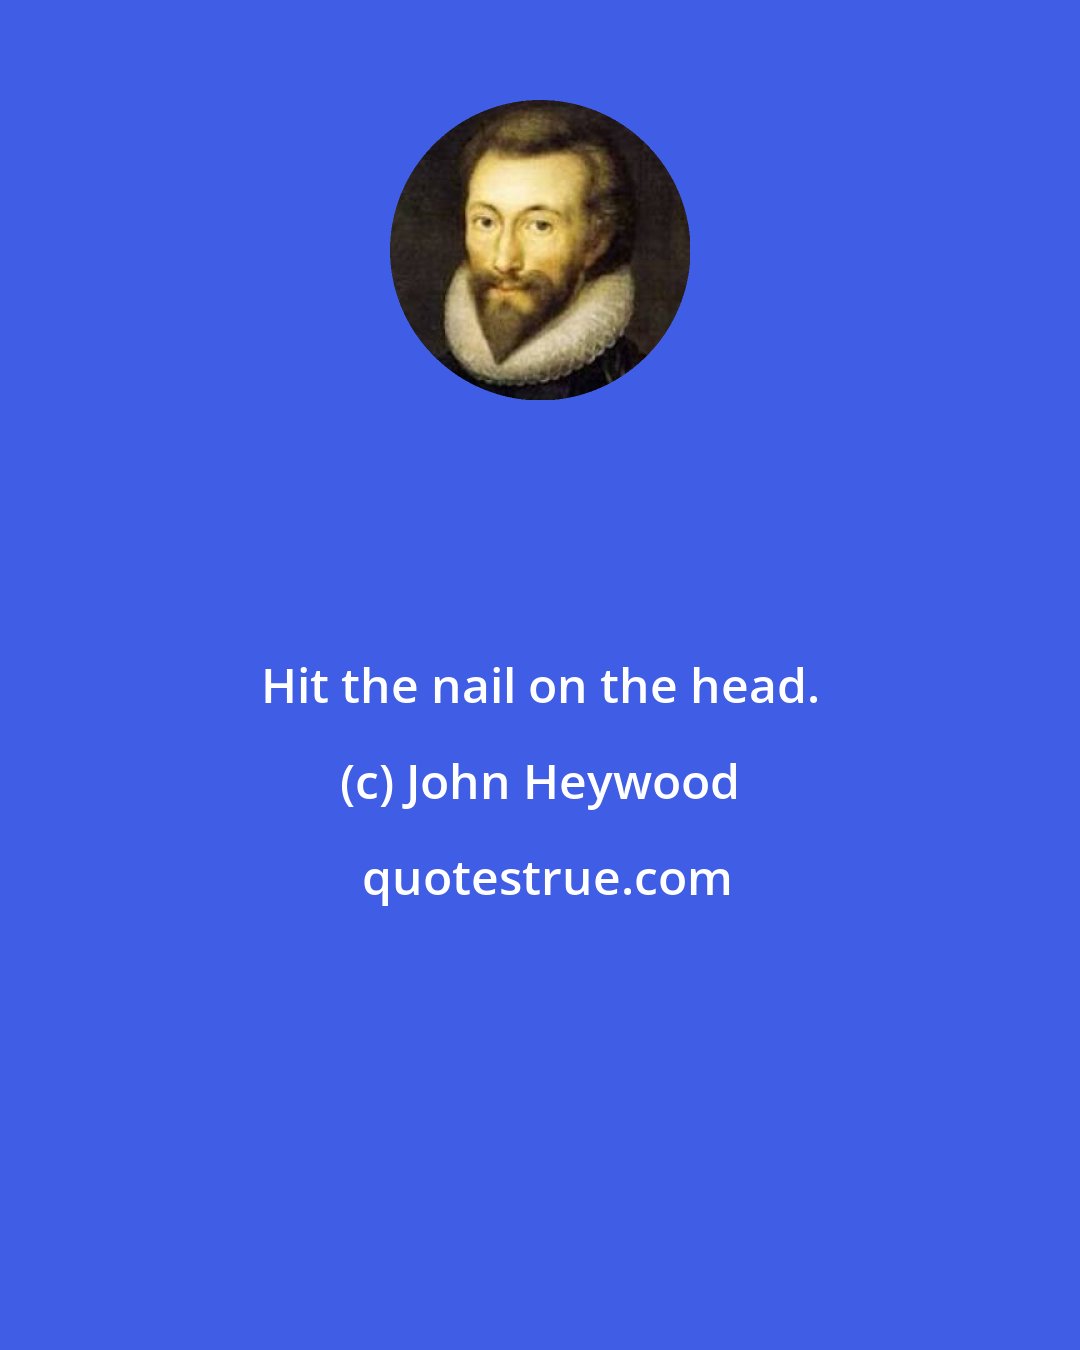 John Heywood: Hit the nail on the head.